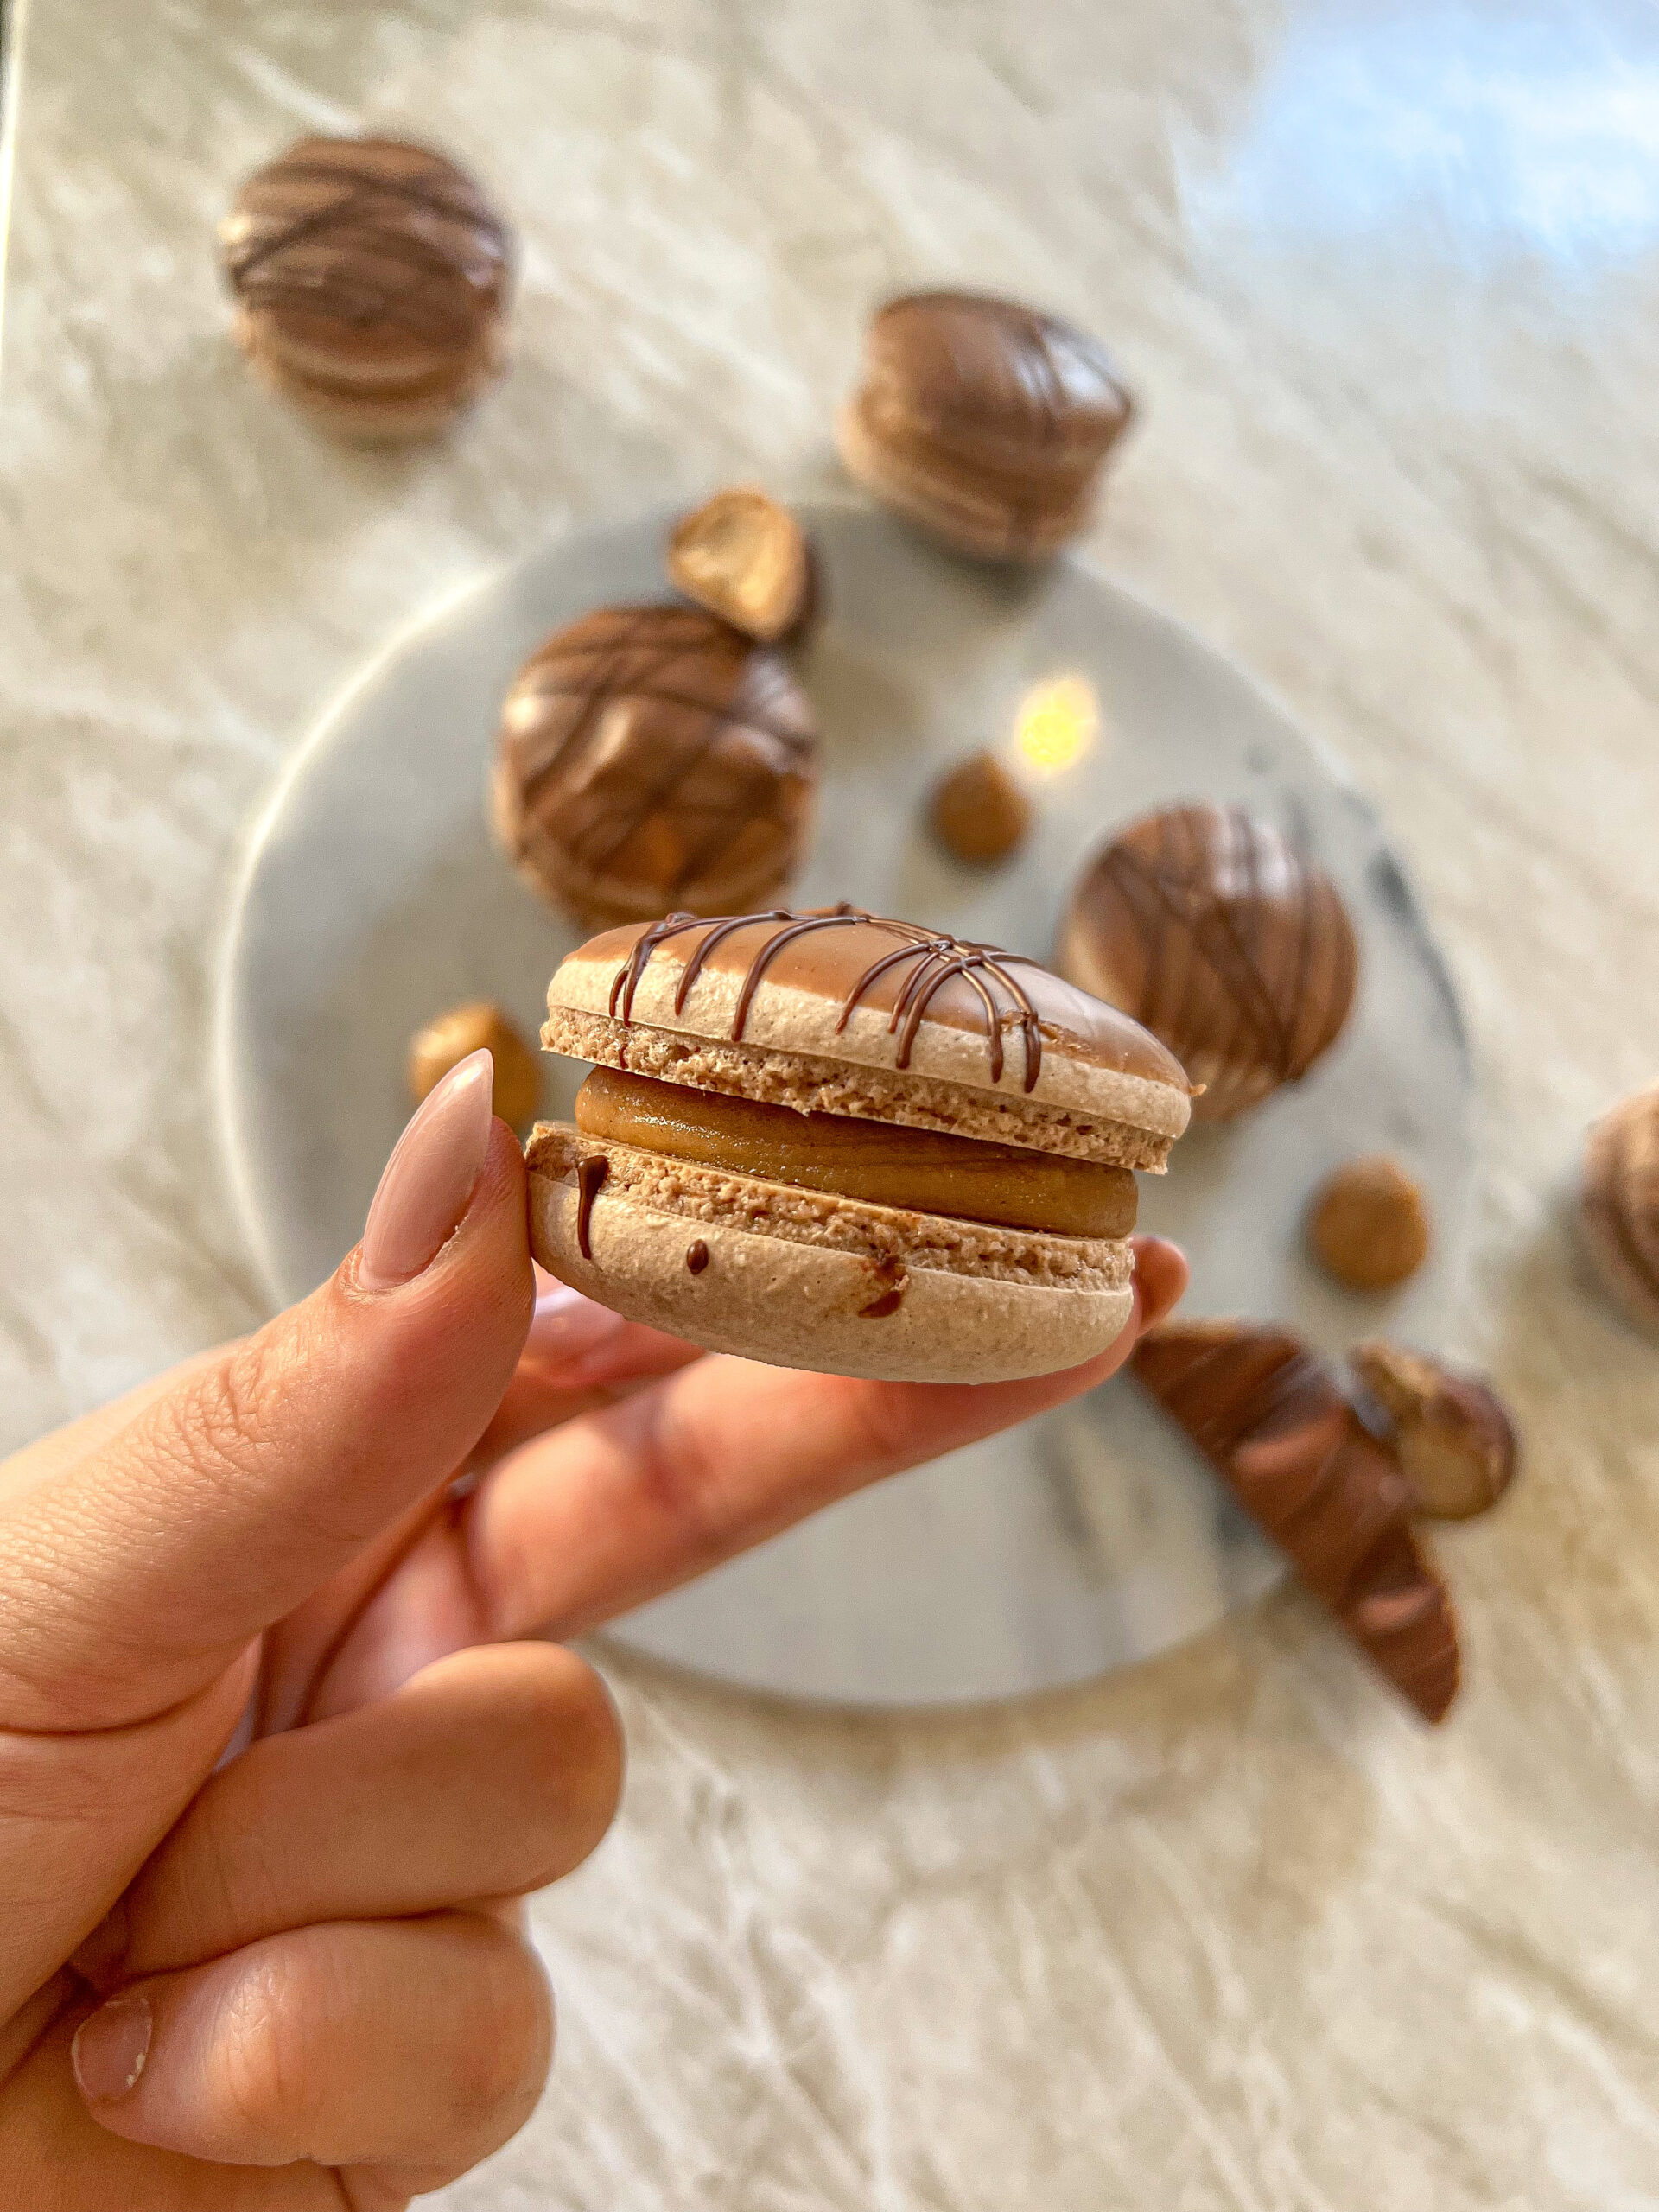 Kinder Bueno Macarons – til dig der elsker chokolade